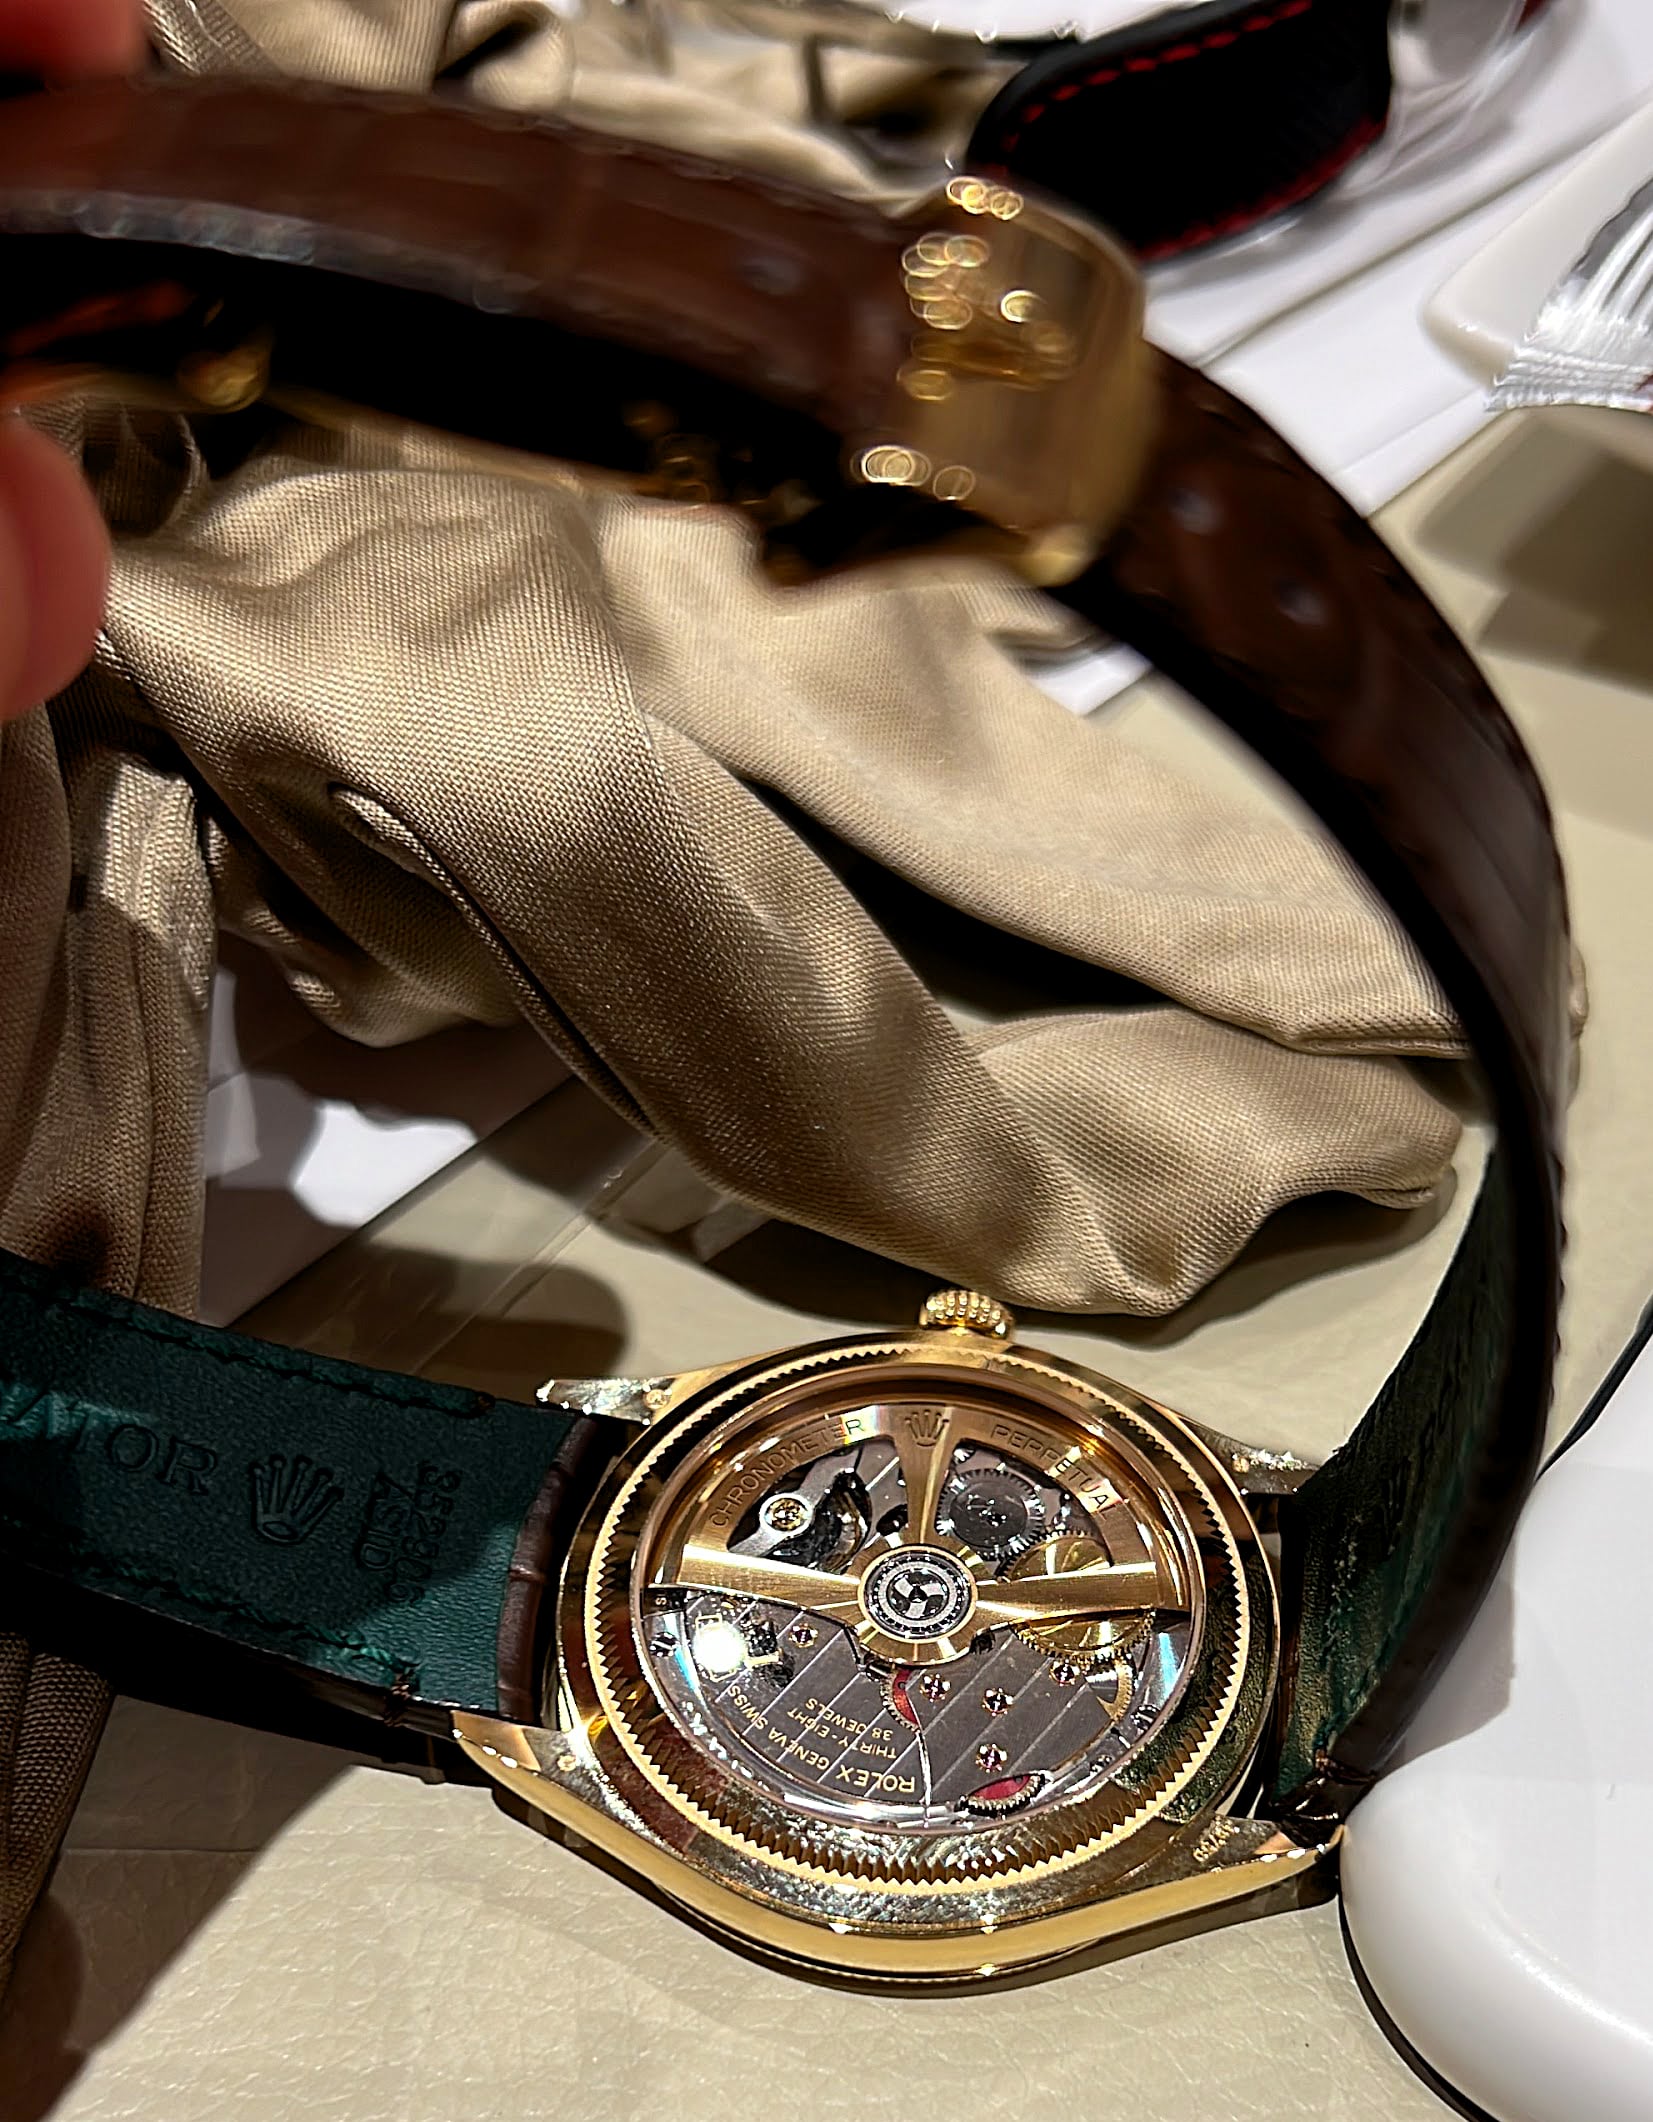 New Luxury Wallet - Page 4 - Rolex Forums - Rolex Watch Forum